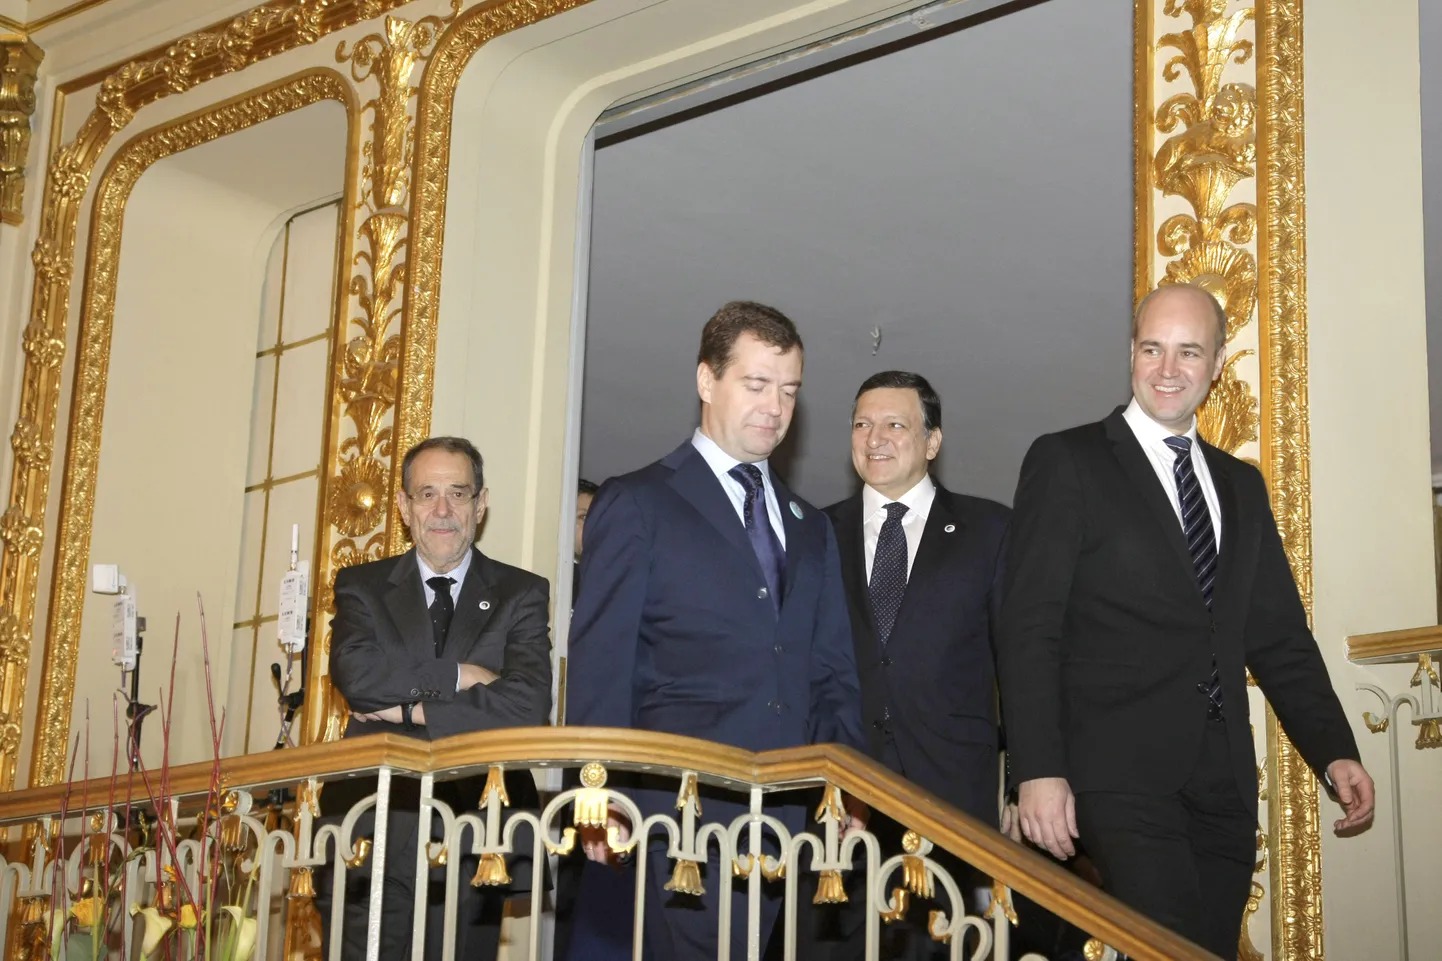 ELi ja Venemaa tipkohtumine Stockholmis. Pildil (vasakult) Euroopa Nõukogu peasekretär Javier Solana, Vene president Dmitri Medvedev, Euroopa Komisjoni president Jose Manuel Barroso ja Rootsi peaminister Fredrik Reinfeldt.